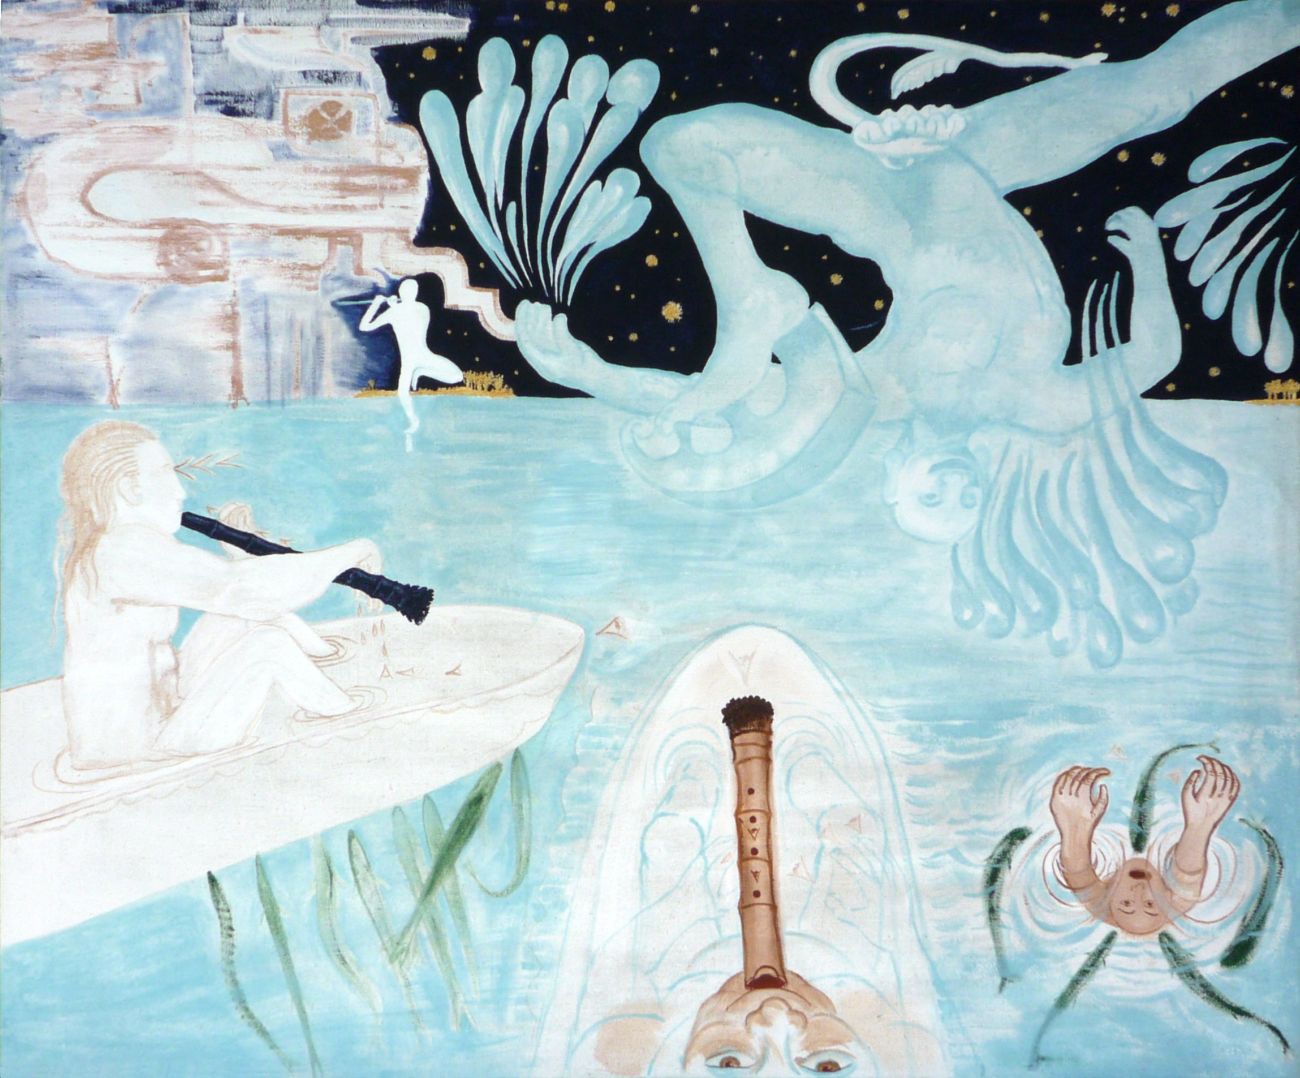 Jan Karpíšek: Shakuhachi freestyle, acryl on canvas, 135x160 cm, 2008